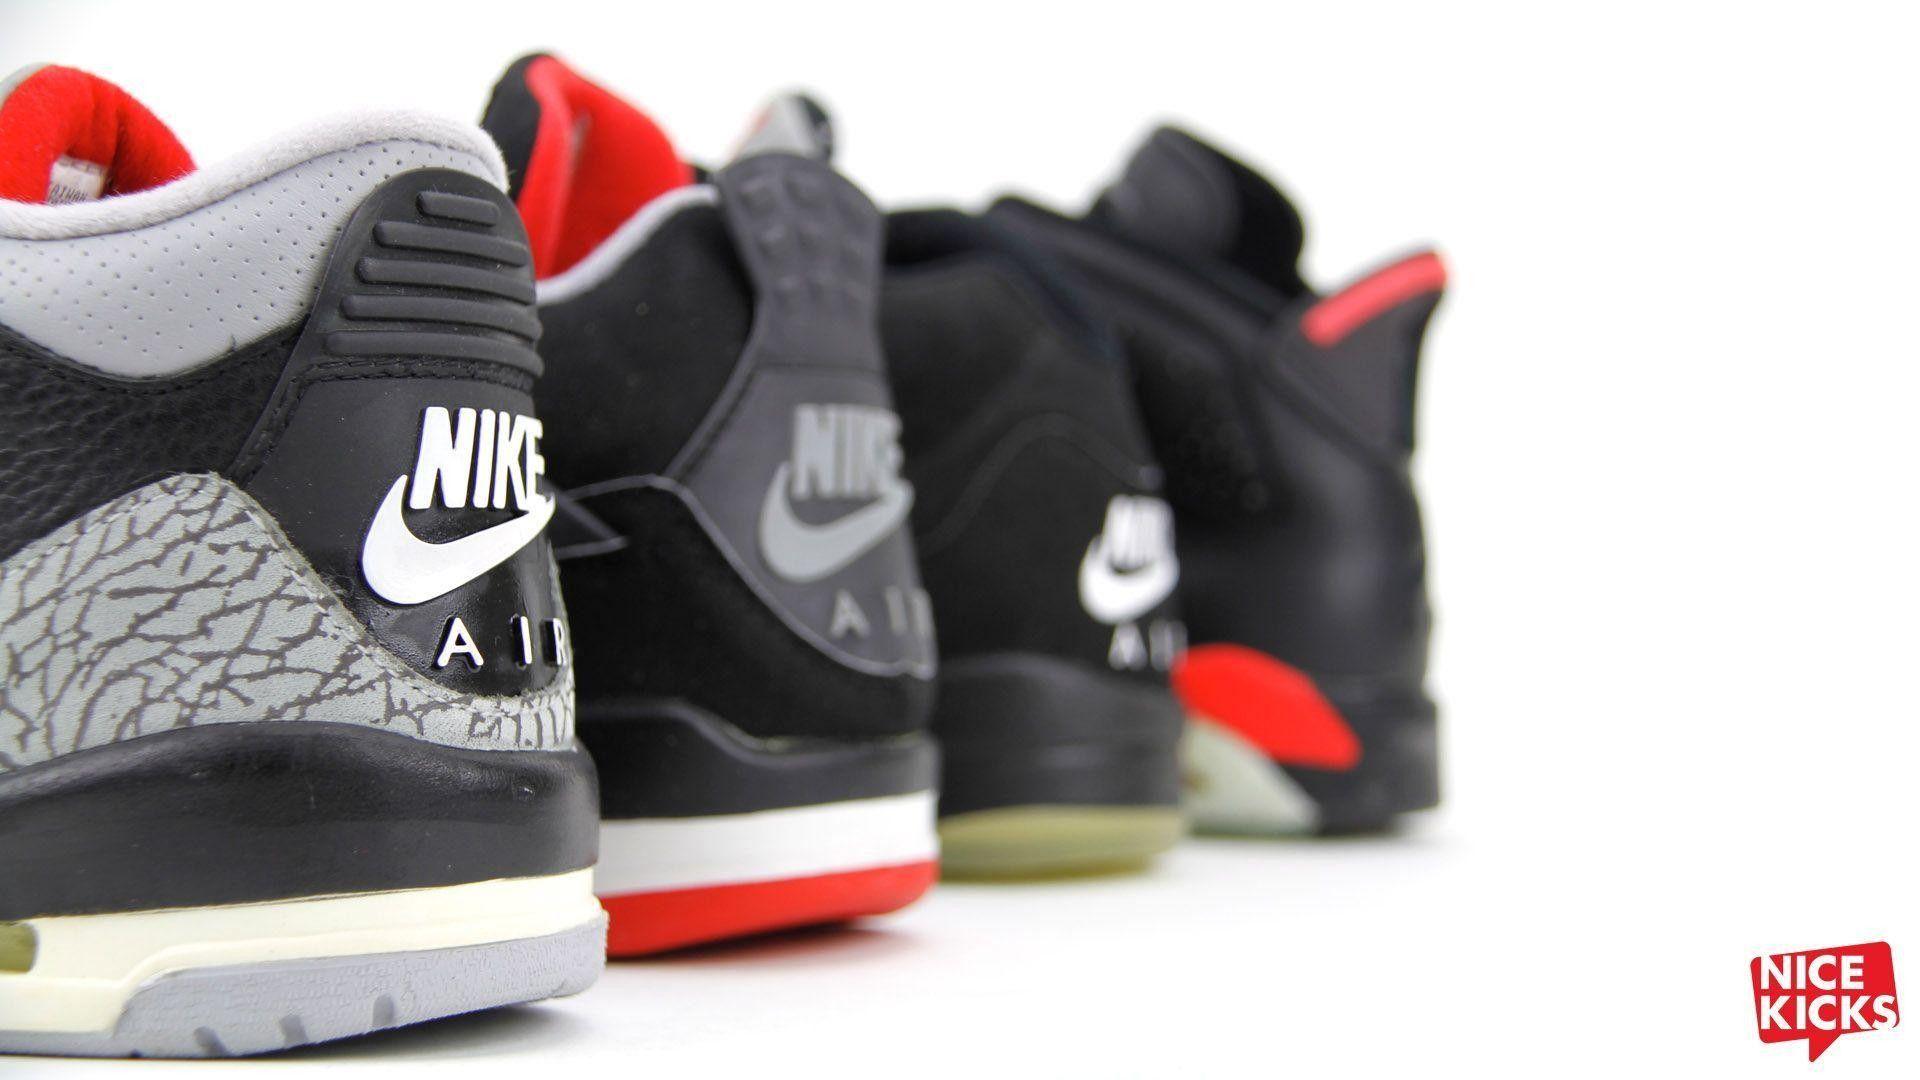 Nike Air Jordan Wallpaper